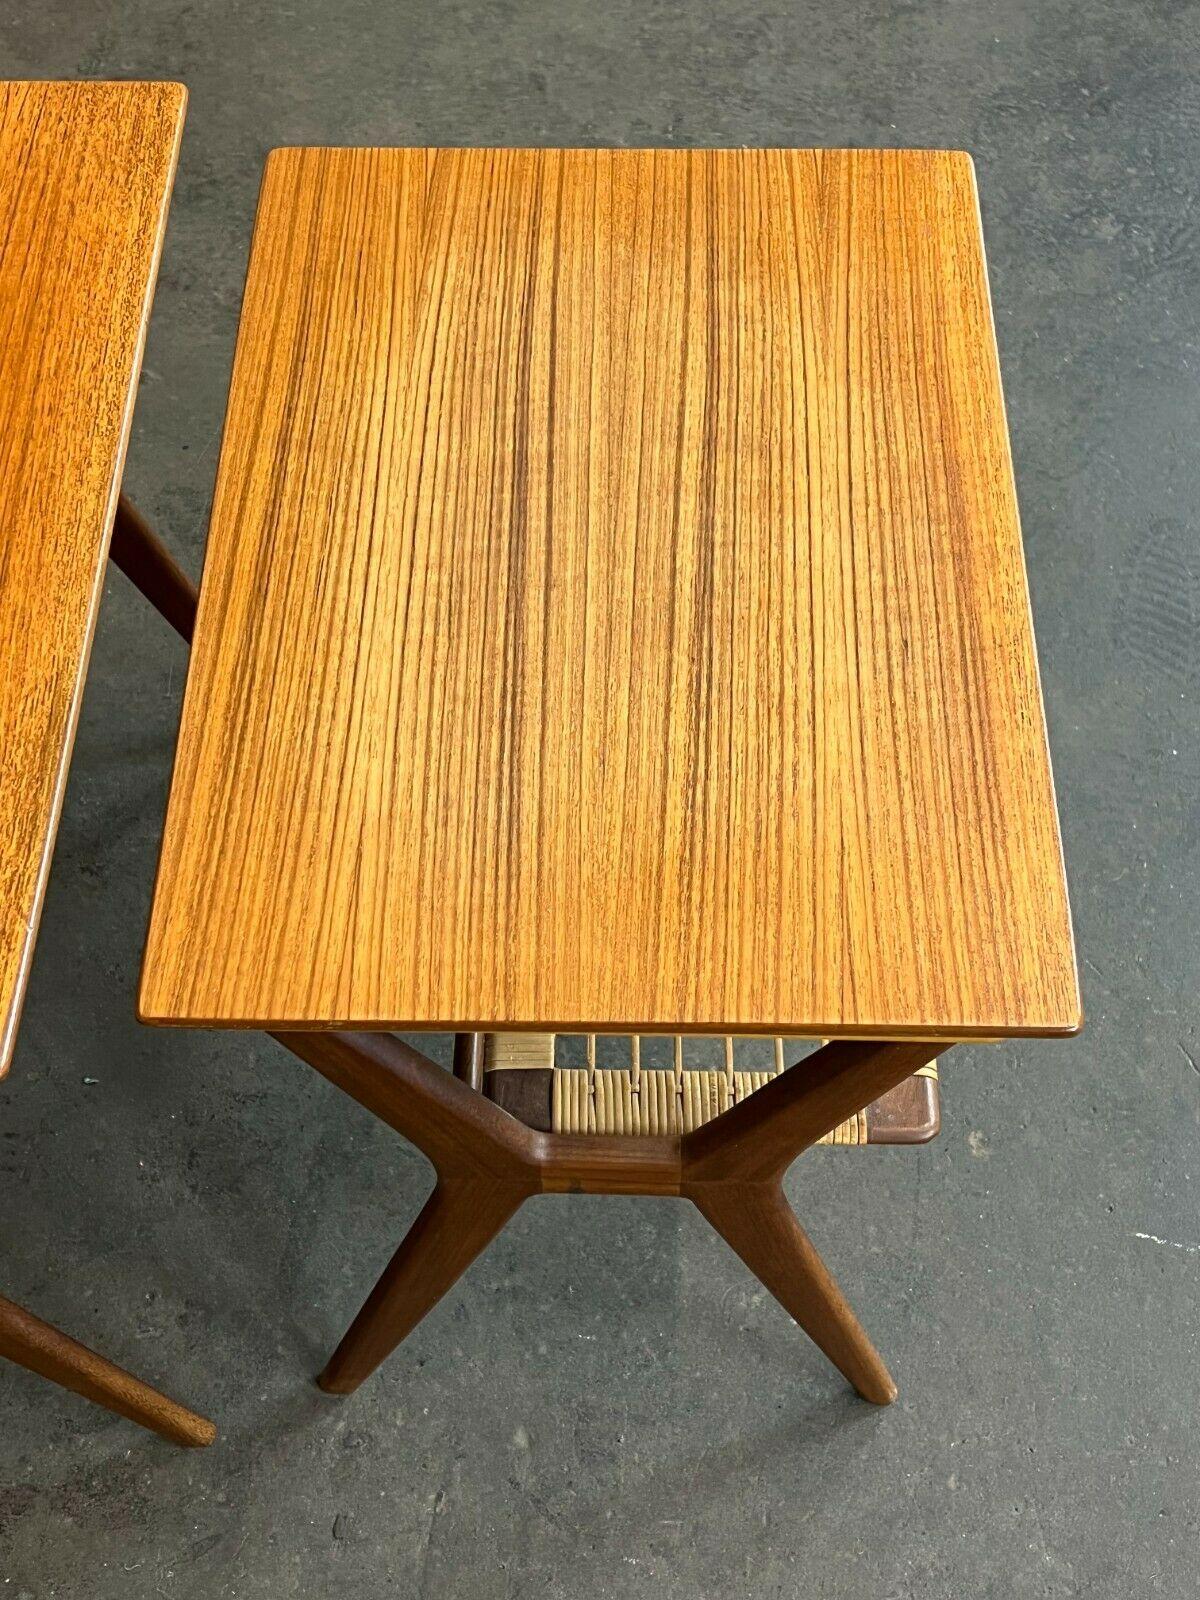 60s 70s Teak Nesting Tables Side Table Side Tables Danish Modern 1